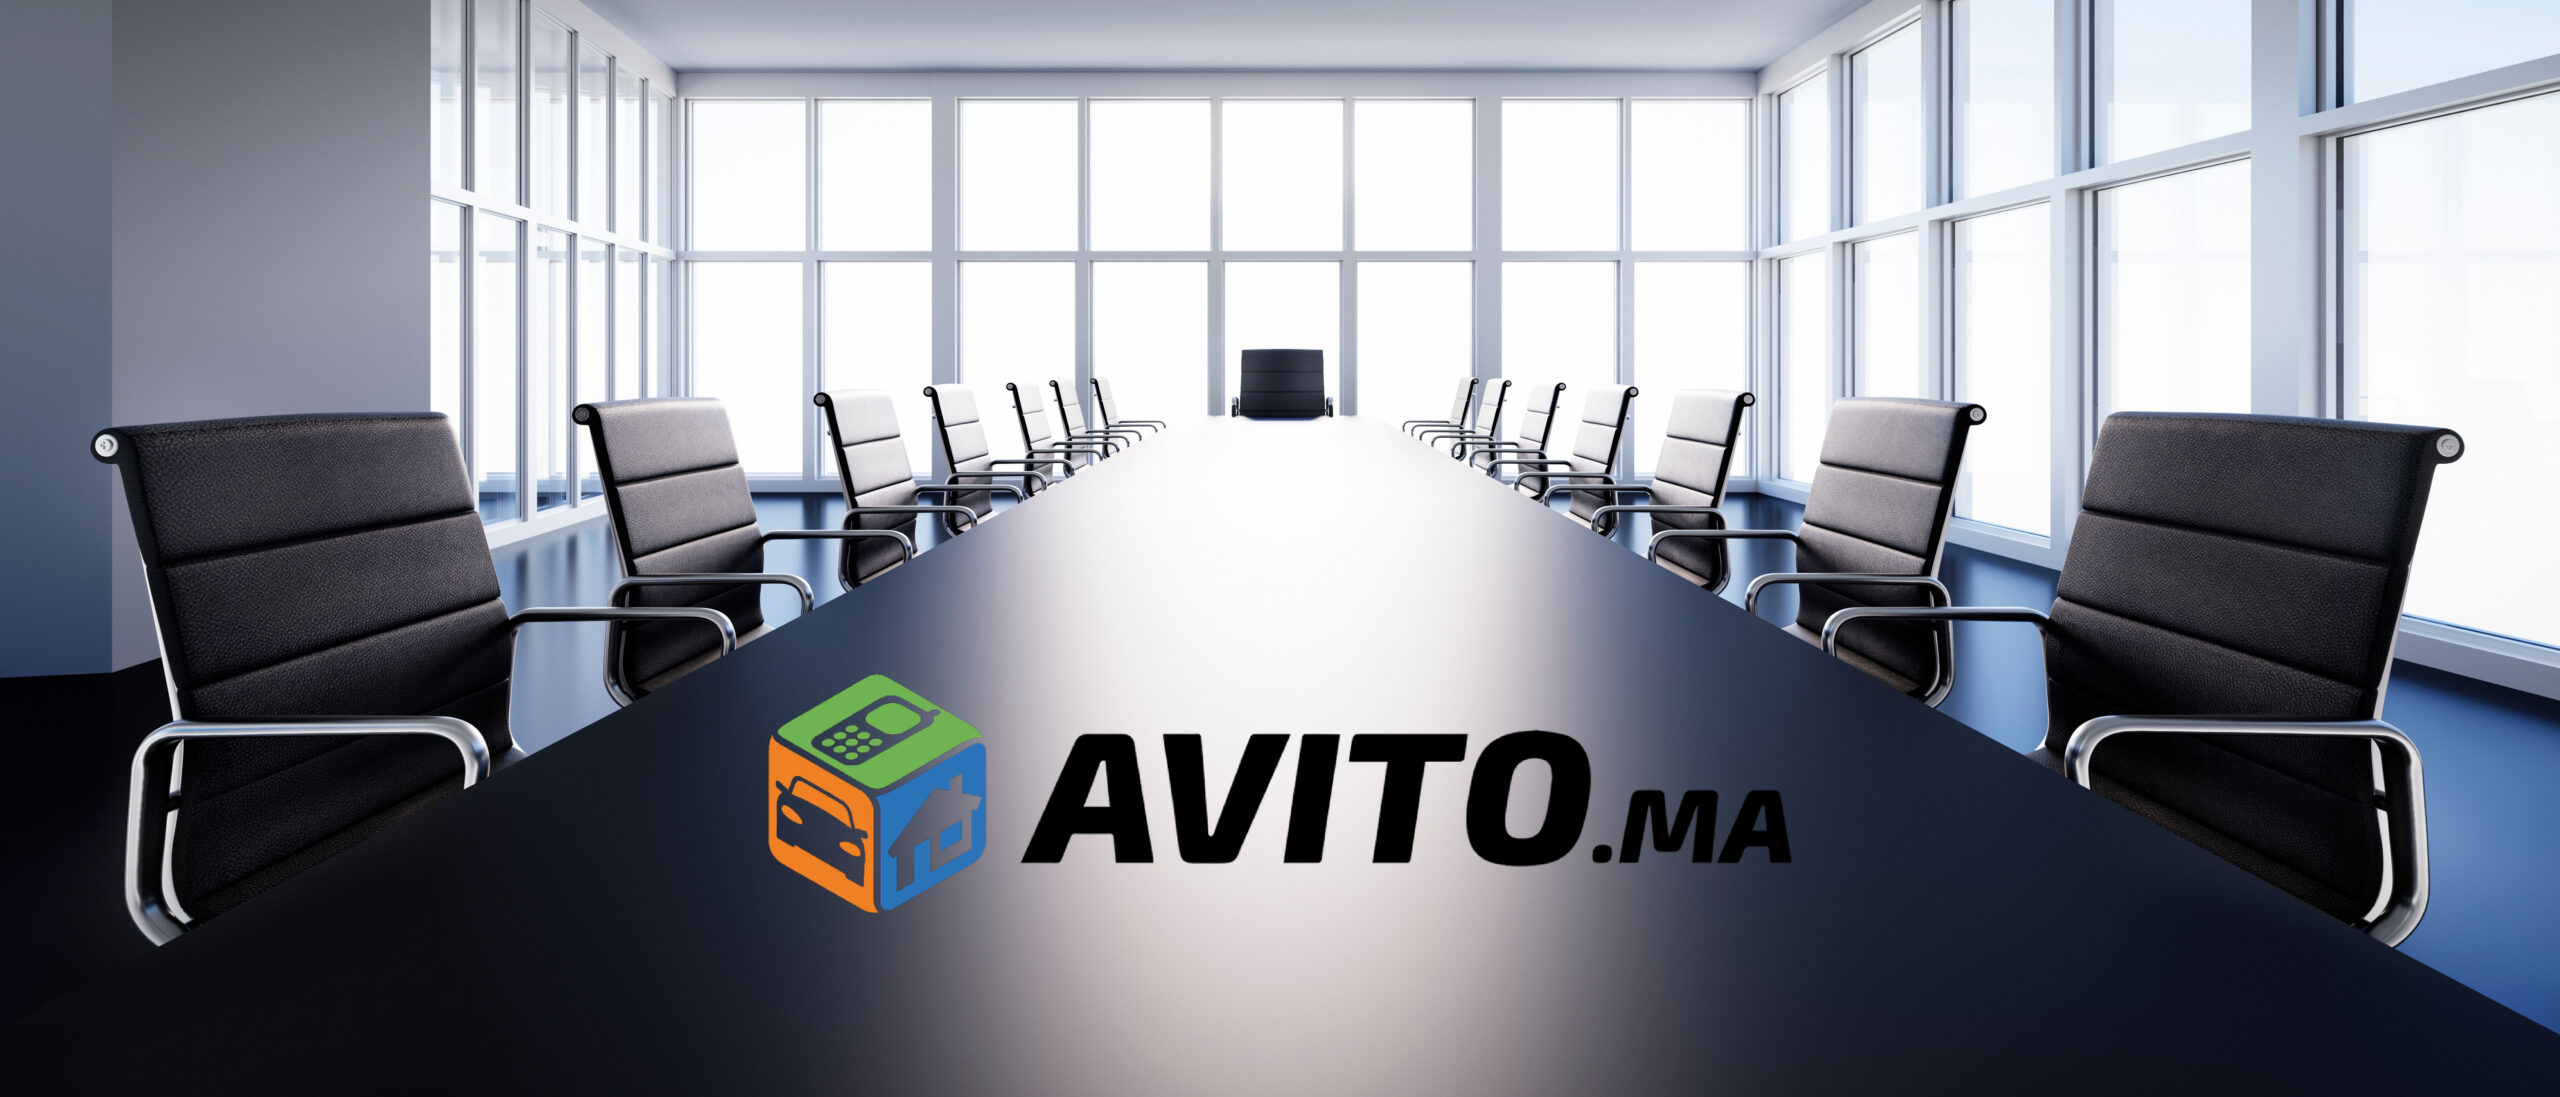 Avitoma Boardroom Scaled